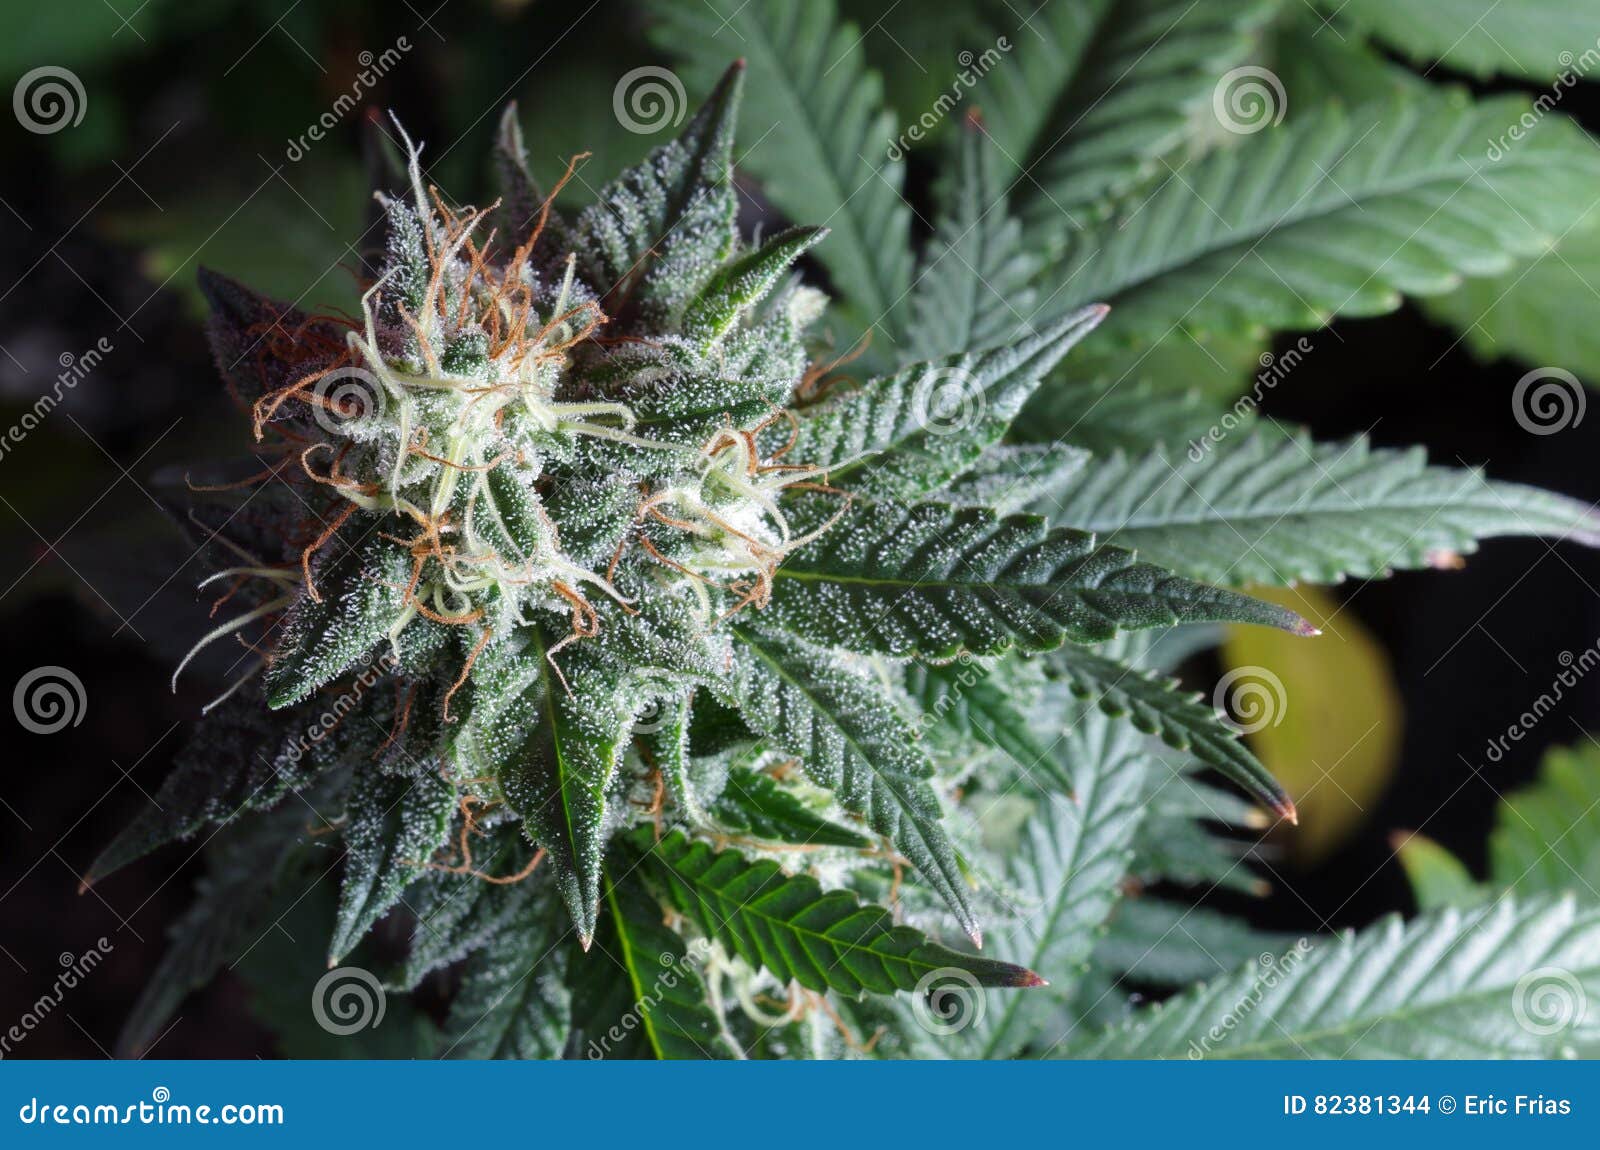 Цветы картинки с коноплей употребления марихуаны